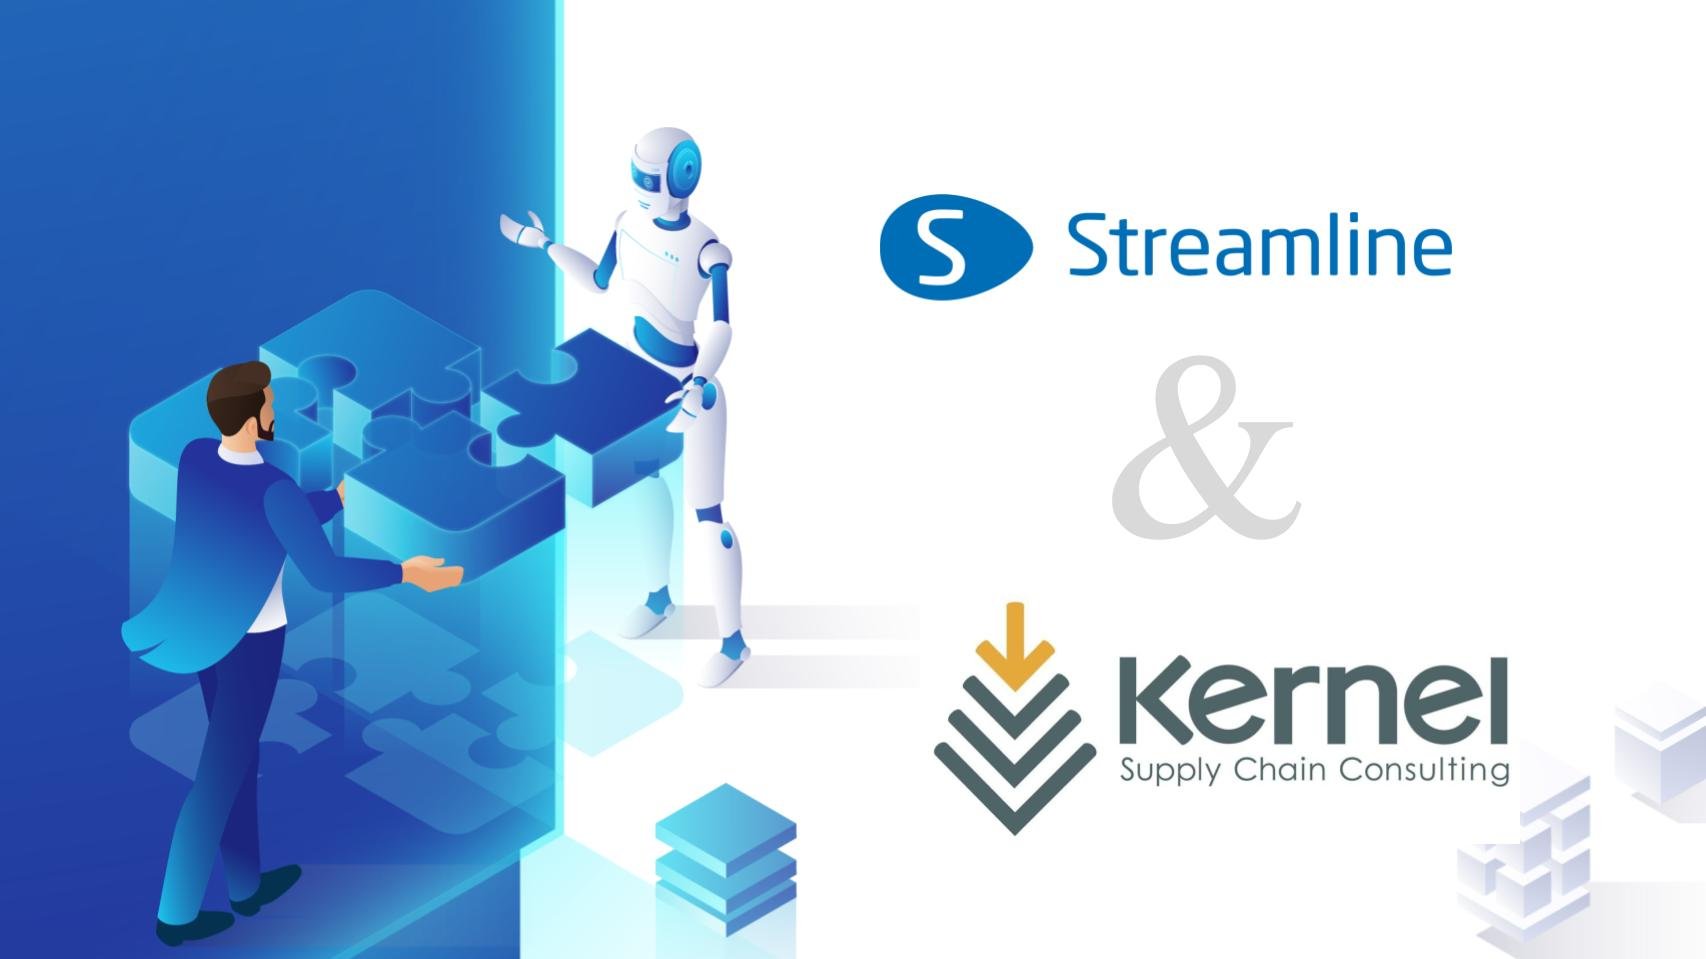 GMDH Streamline i Kernel Supply Chain Consulting ogłaszają wartościowe partnerstwo